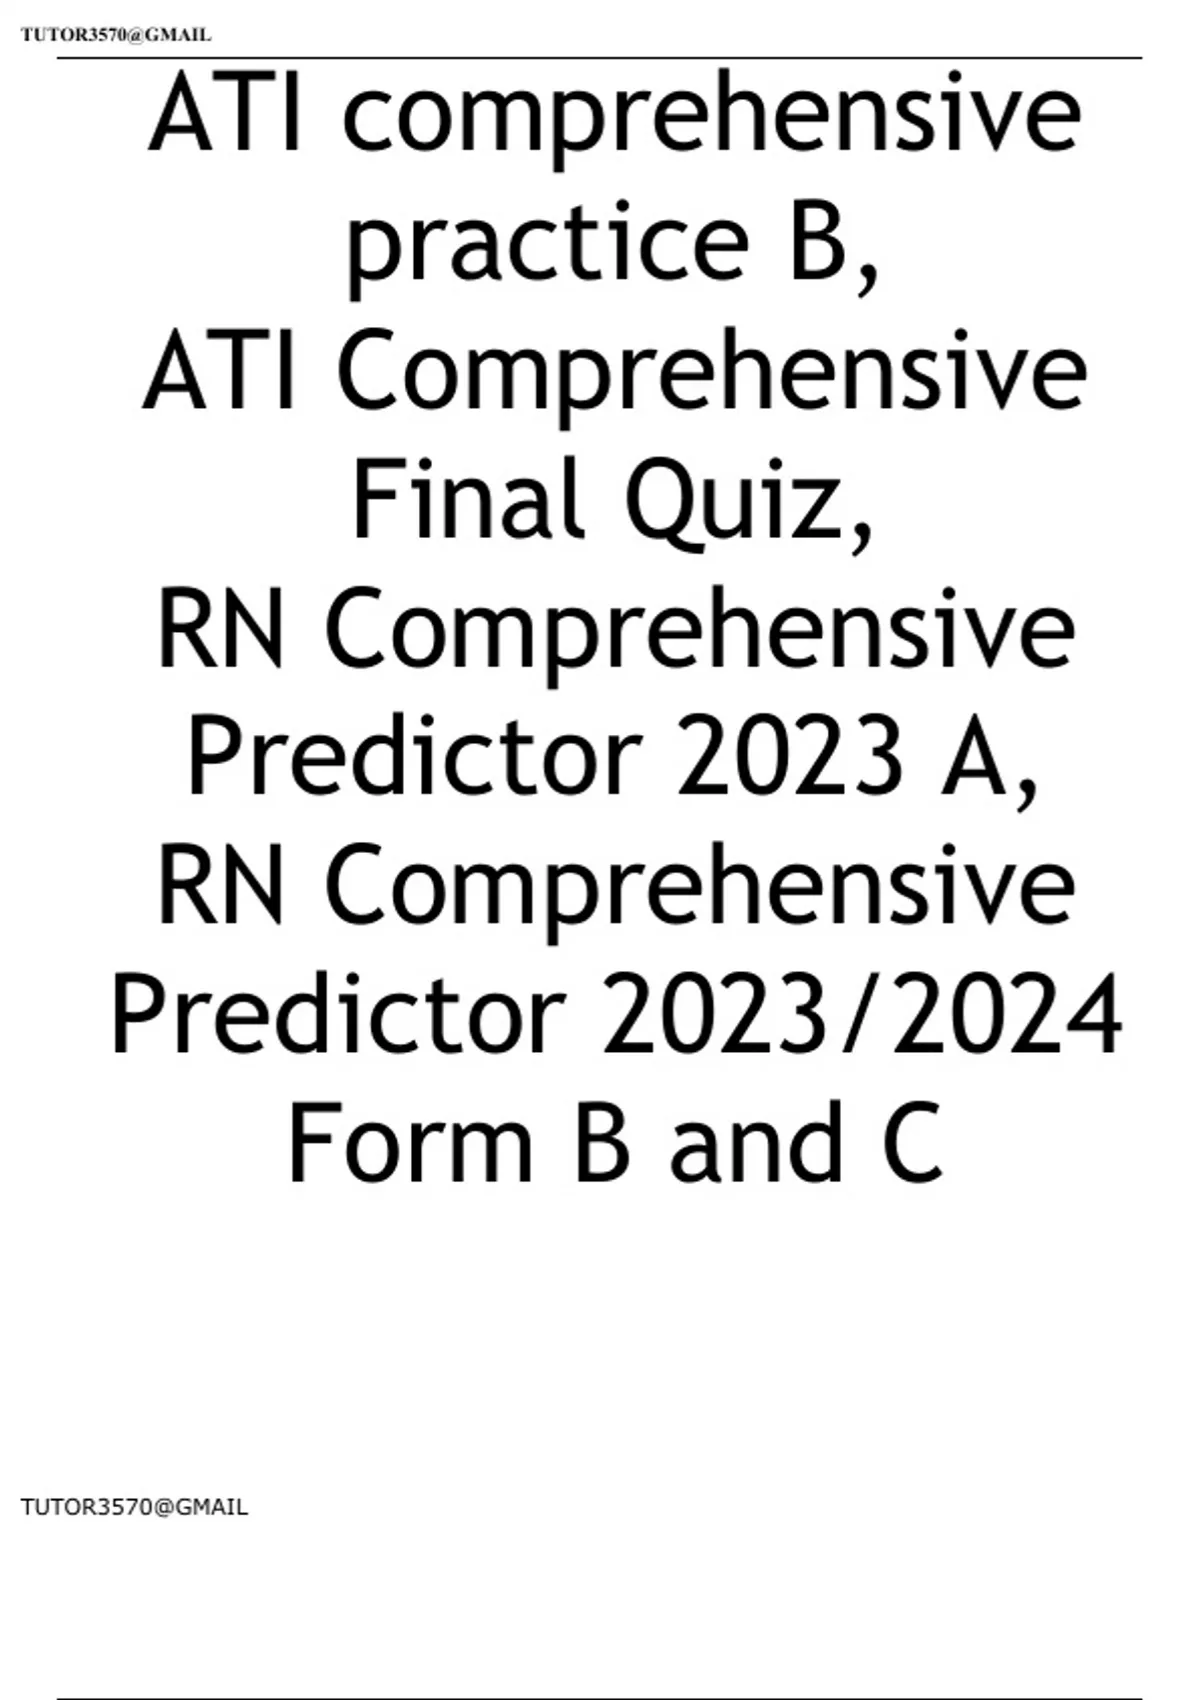 ATI comprehensive practice B, ATI Comprehensive Final Quiz, RN